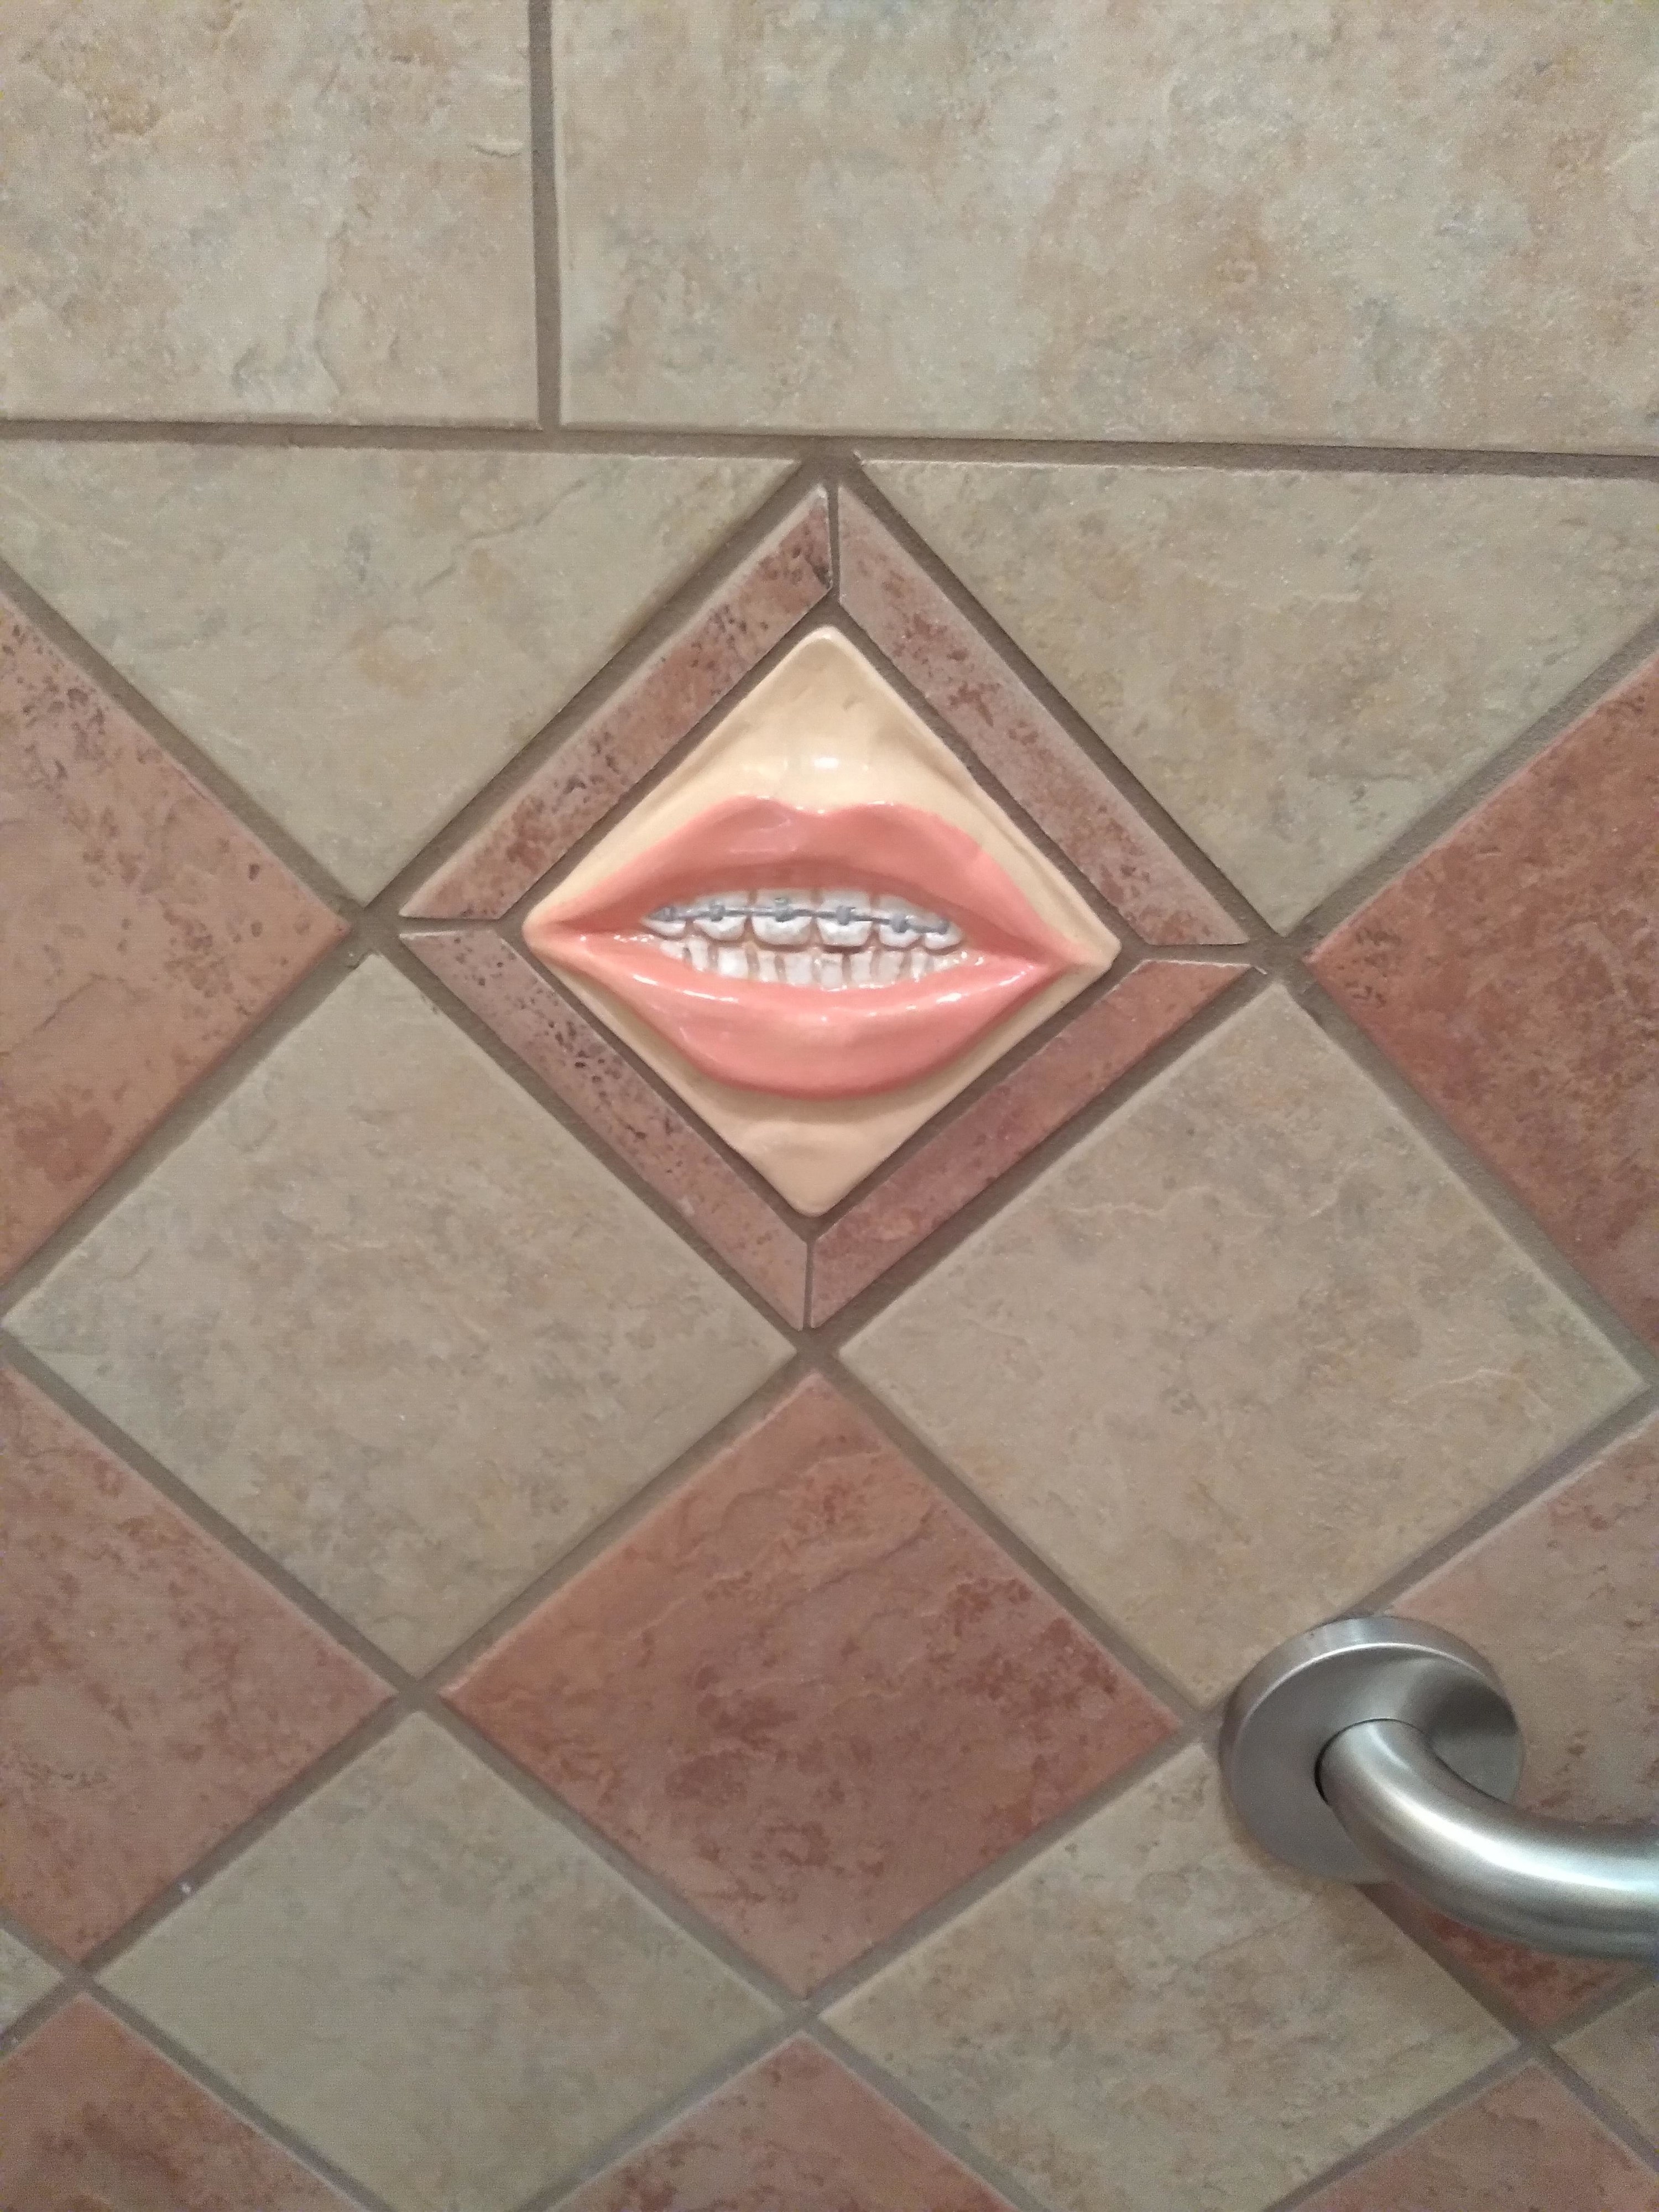 Tile in a bathroom with teeth